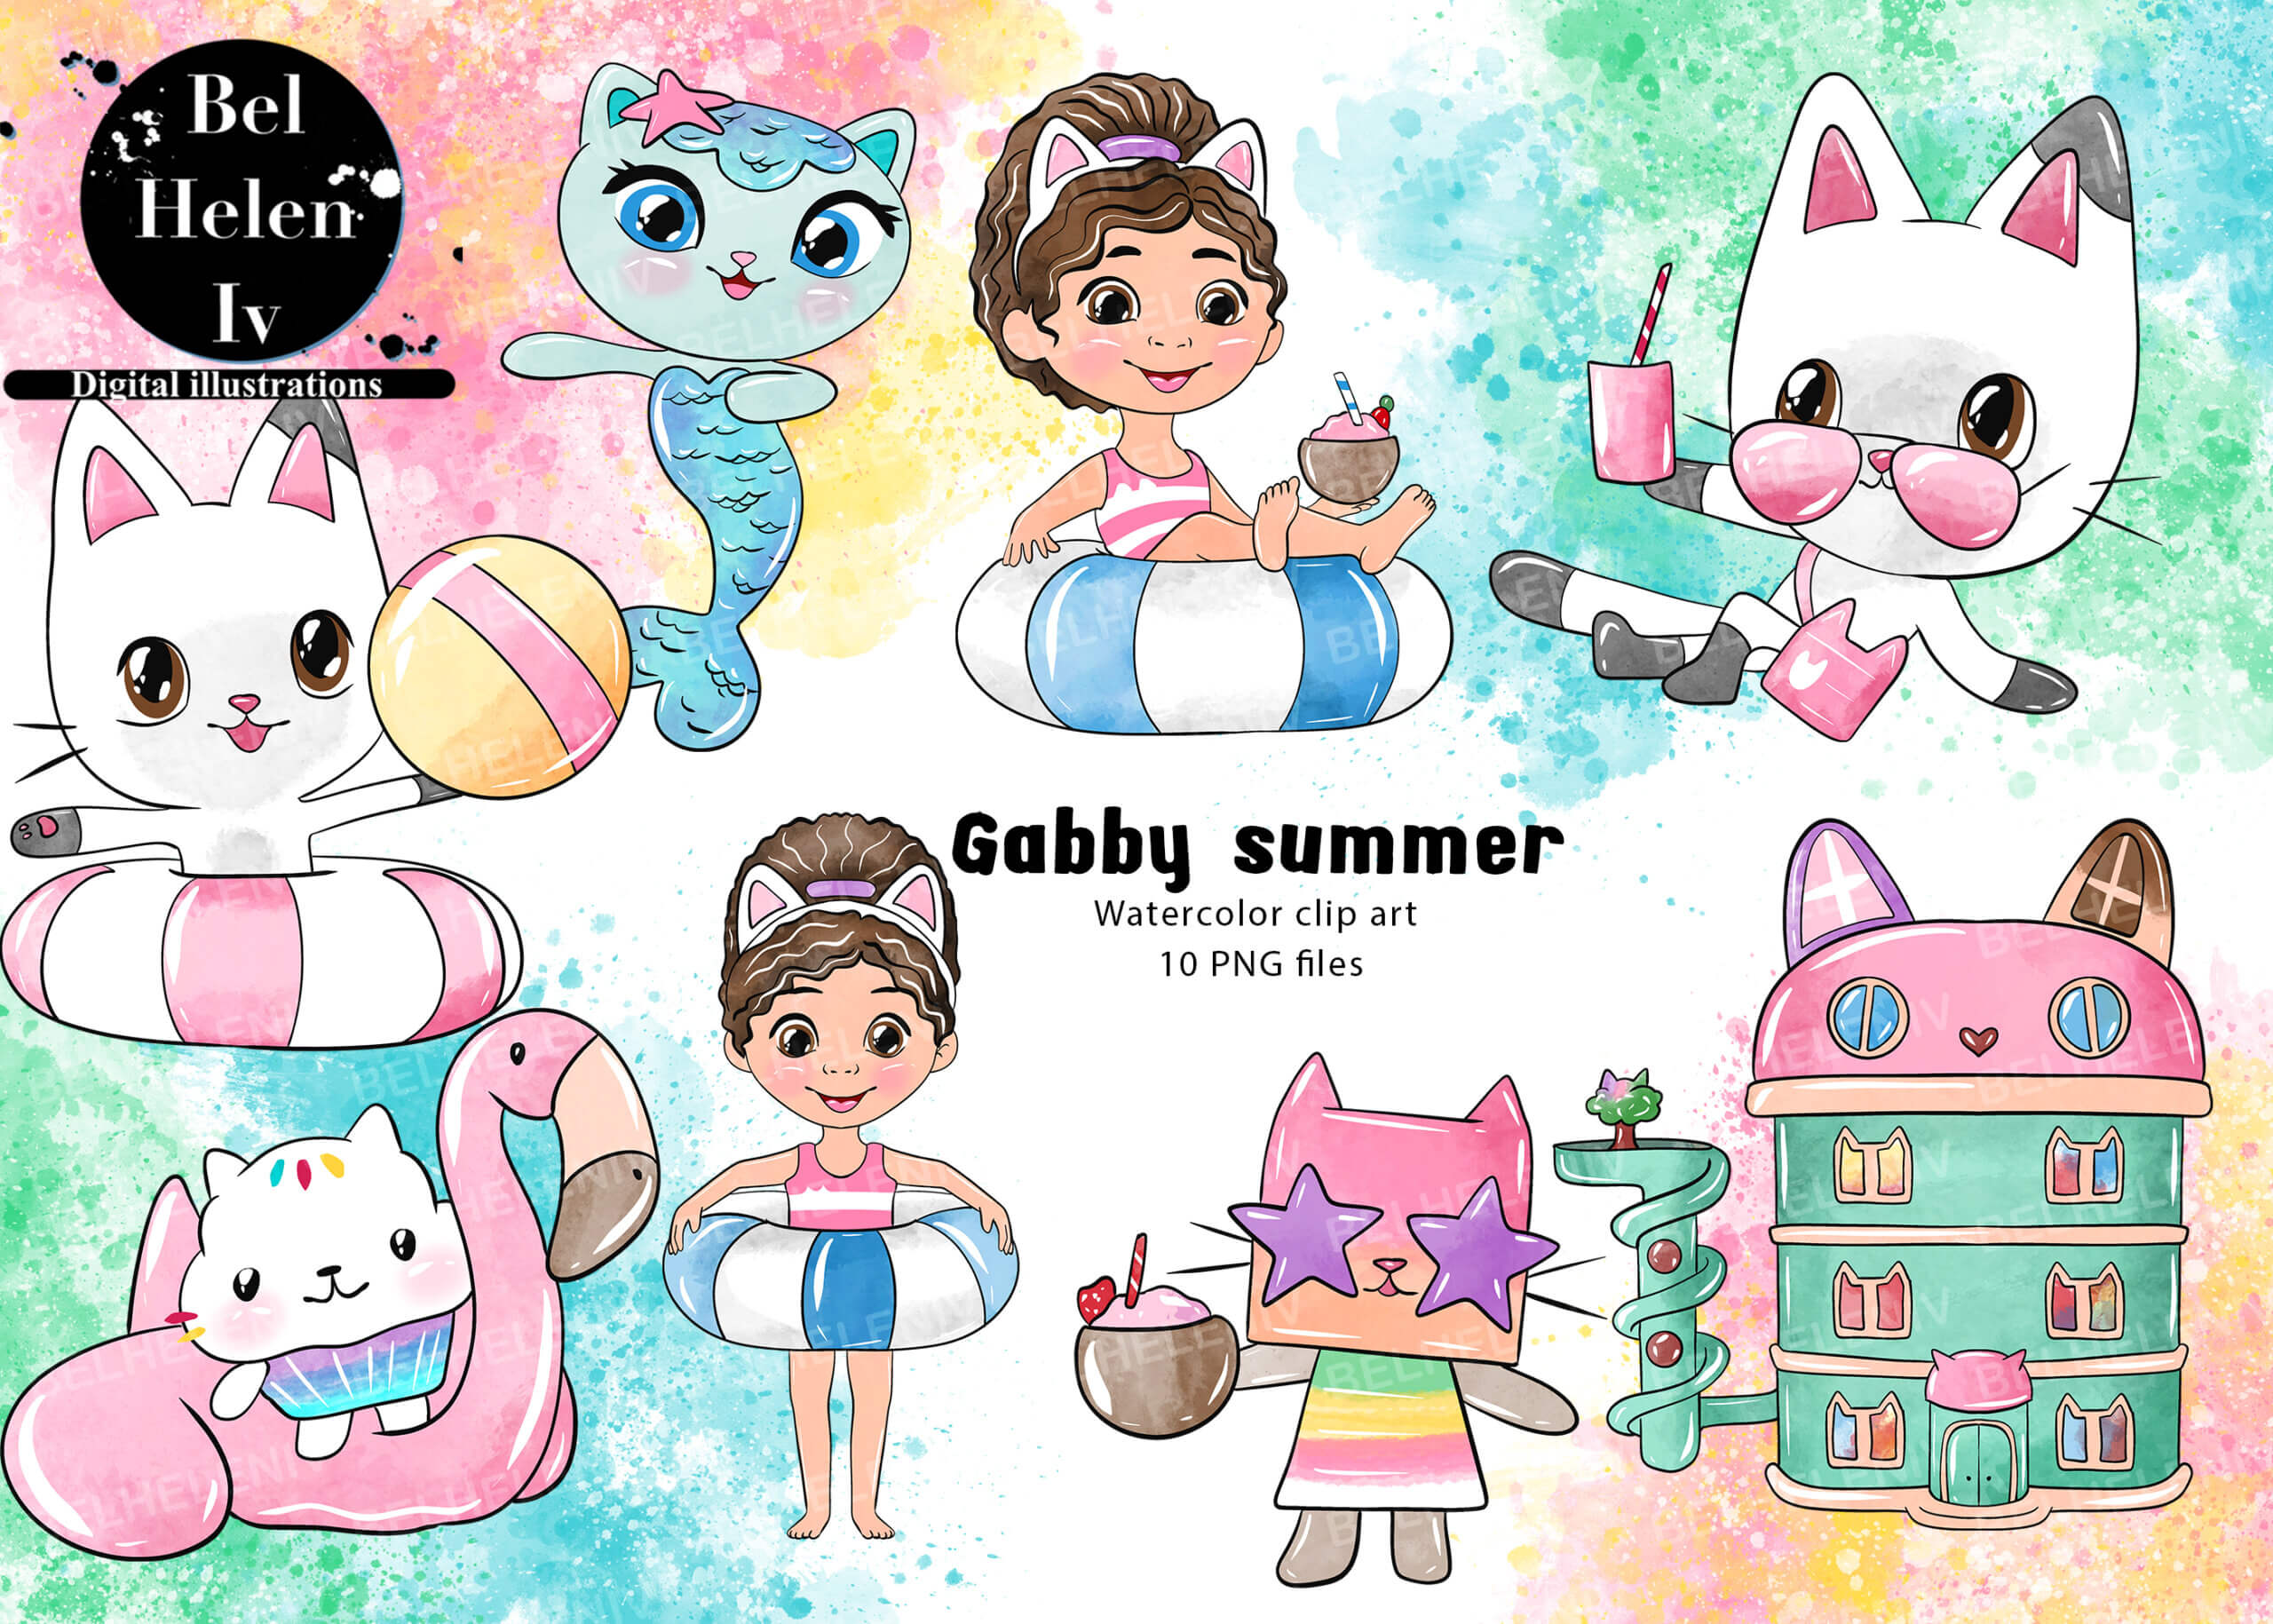 Gabby summer